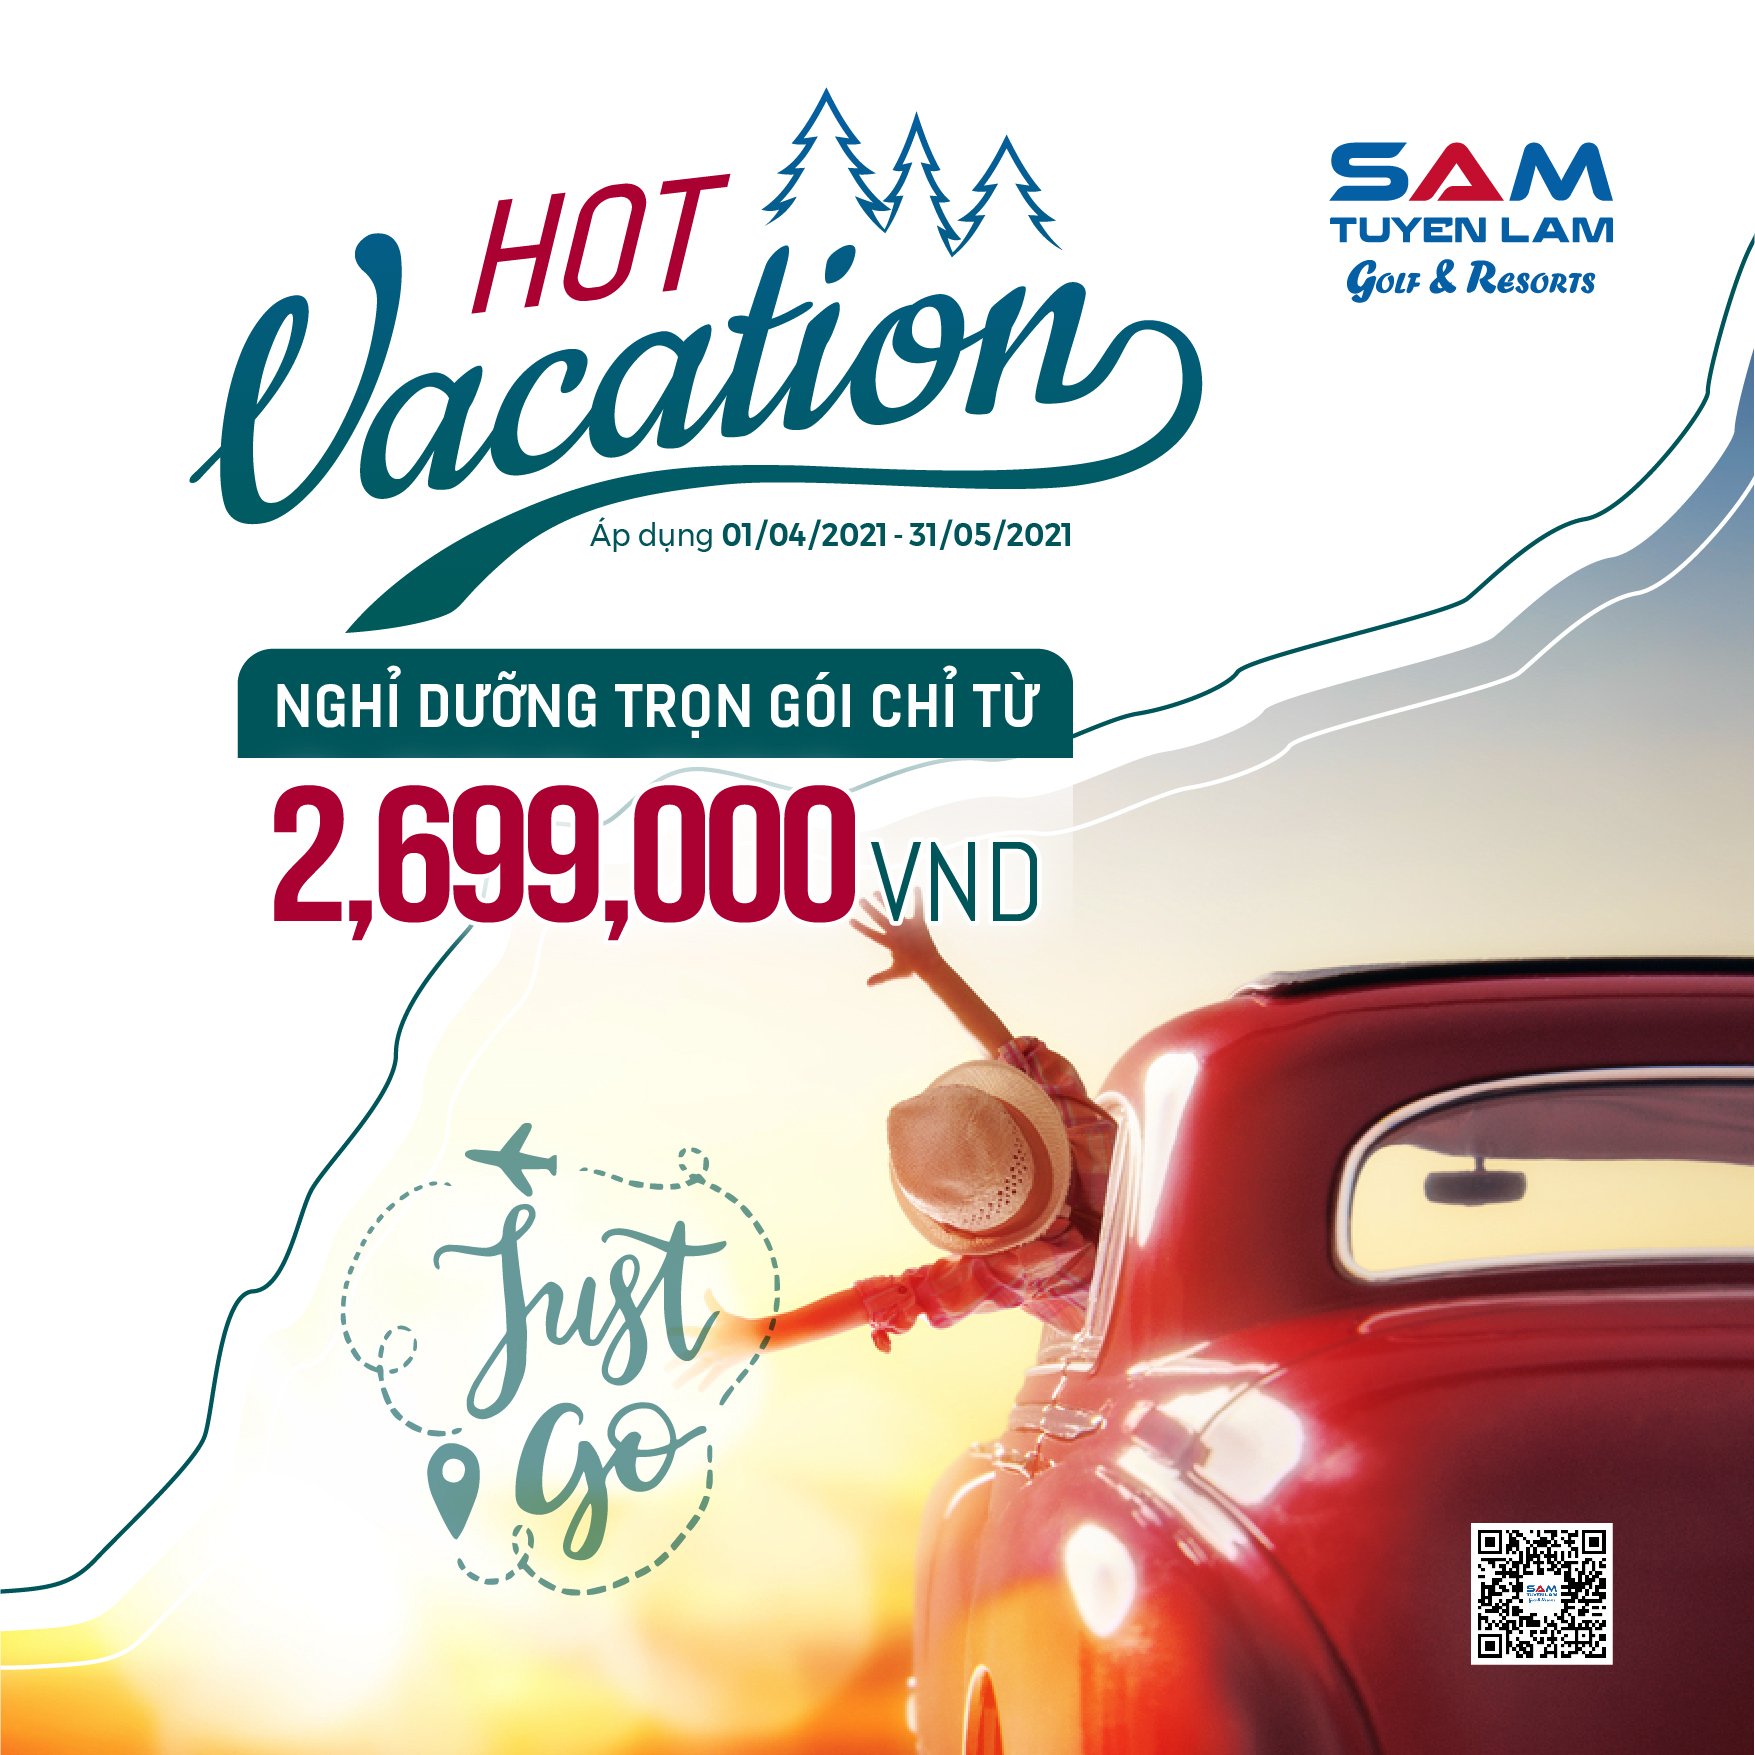 (Tiếng Việt) Hot Vacation 2021